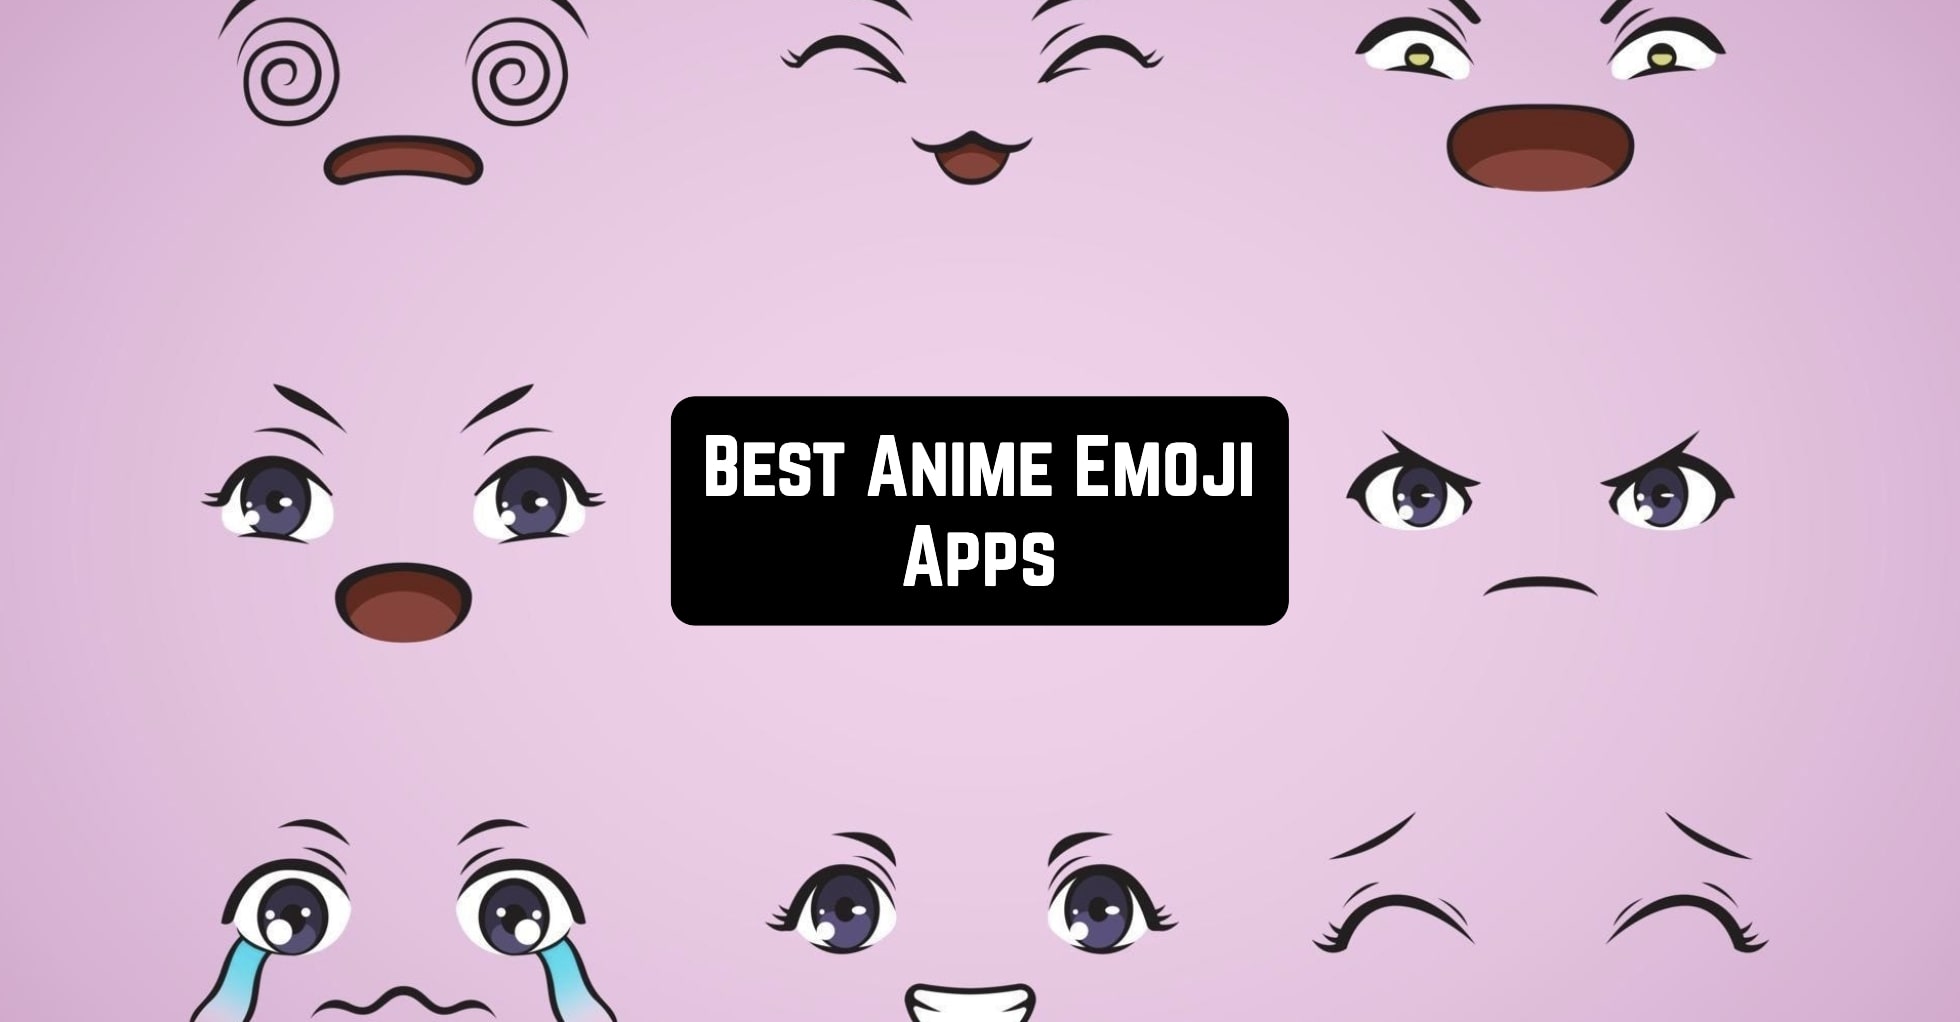 Chibi Girl Emoji - Anime Girls Emojis Transparent - Free Transparent PNG  Clipart Images Download